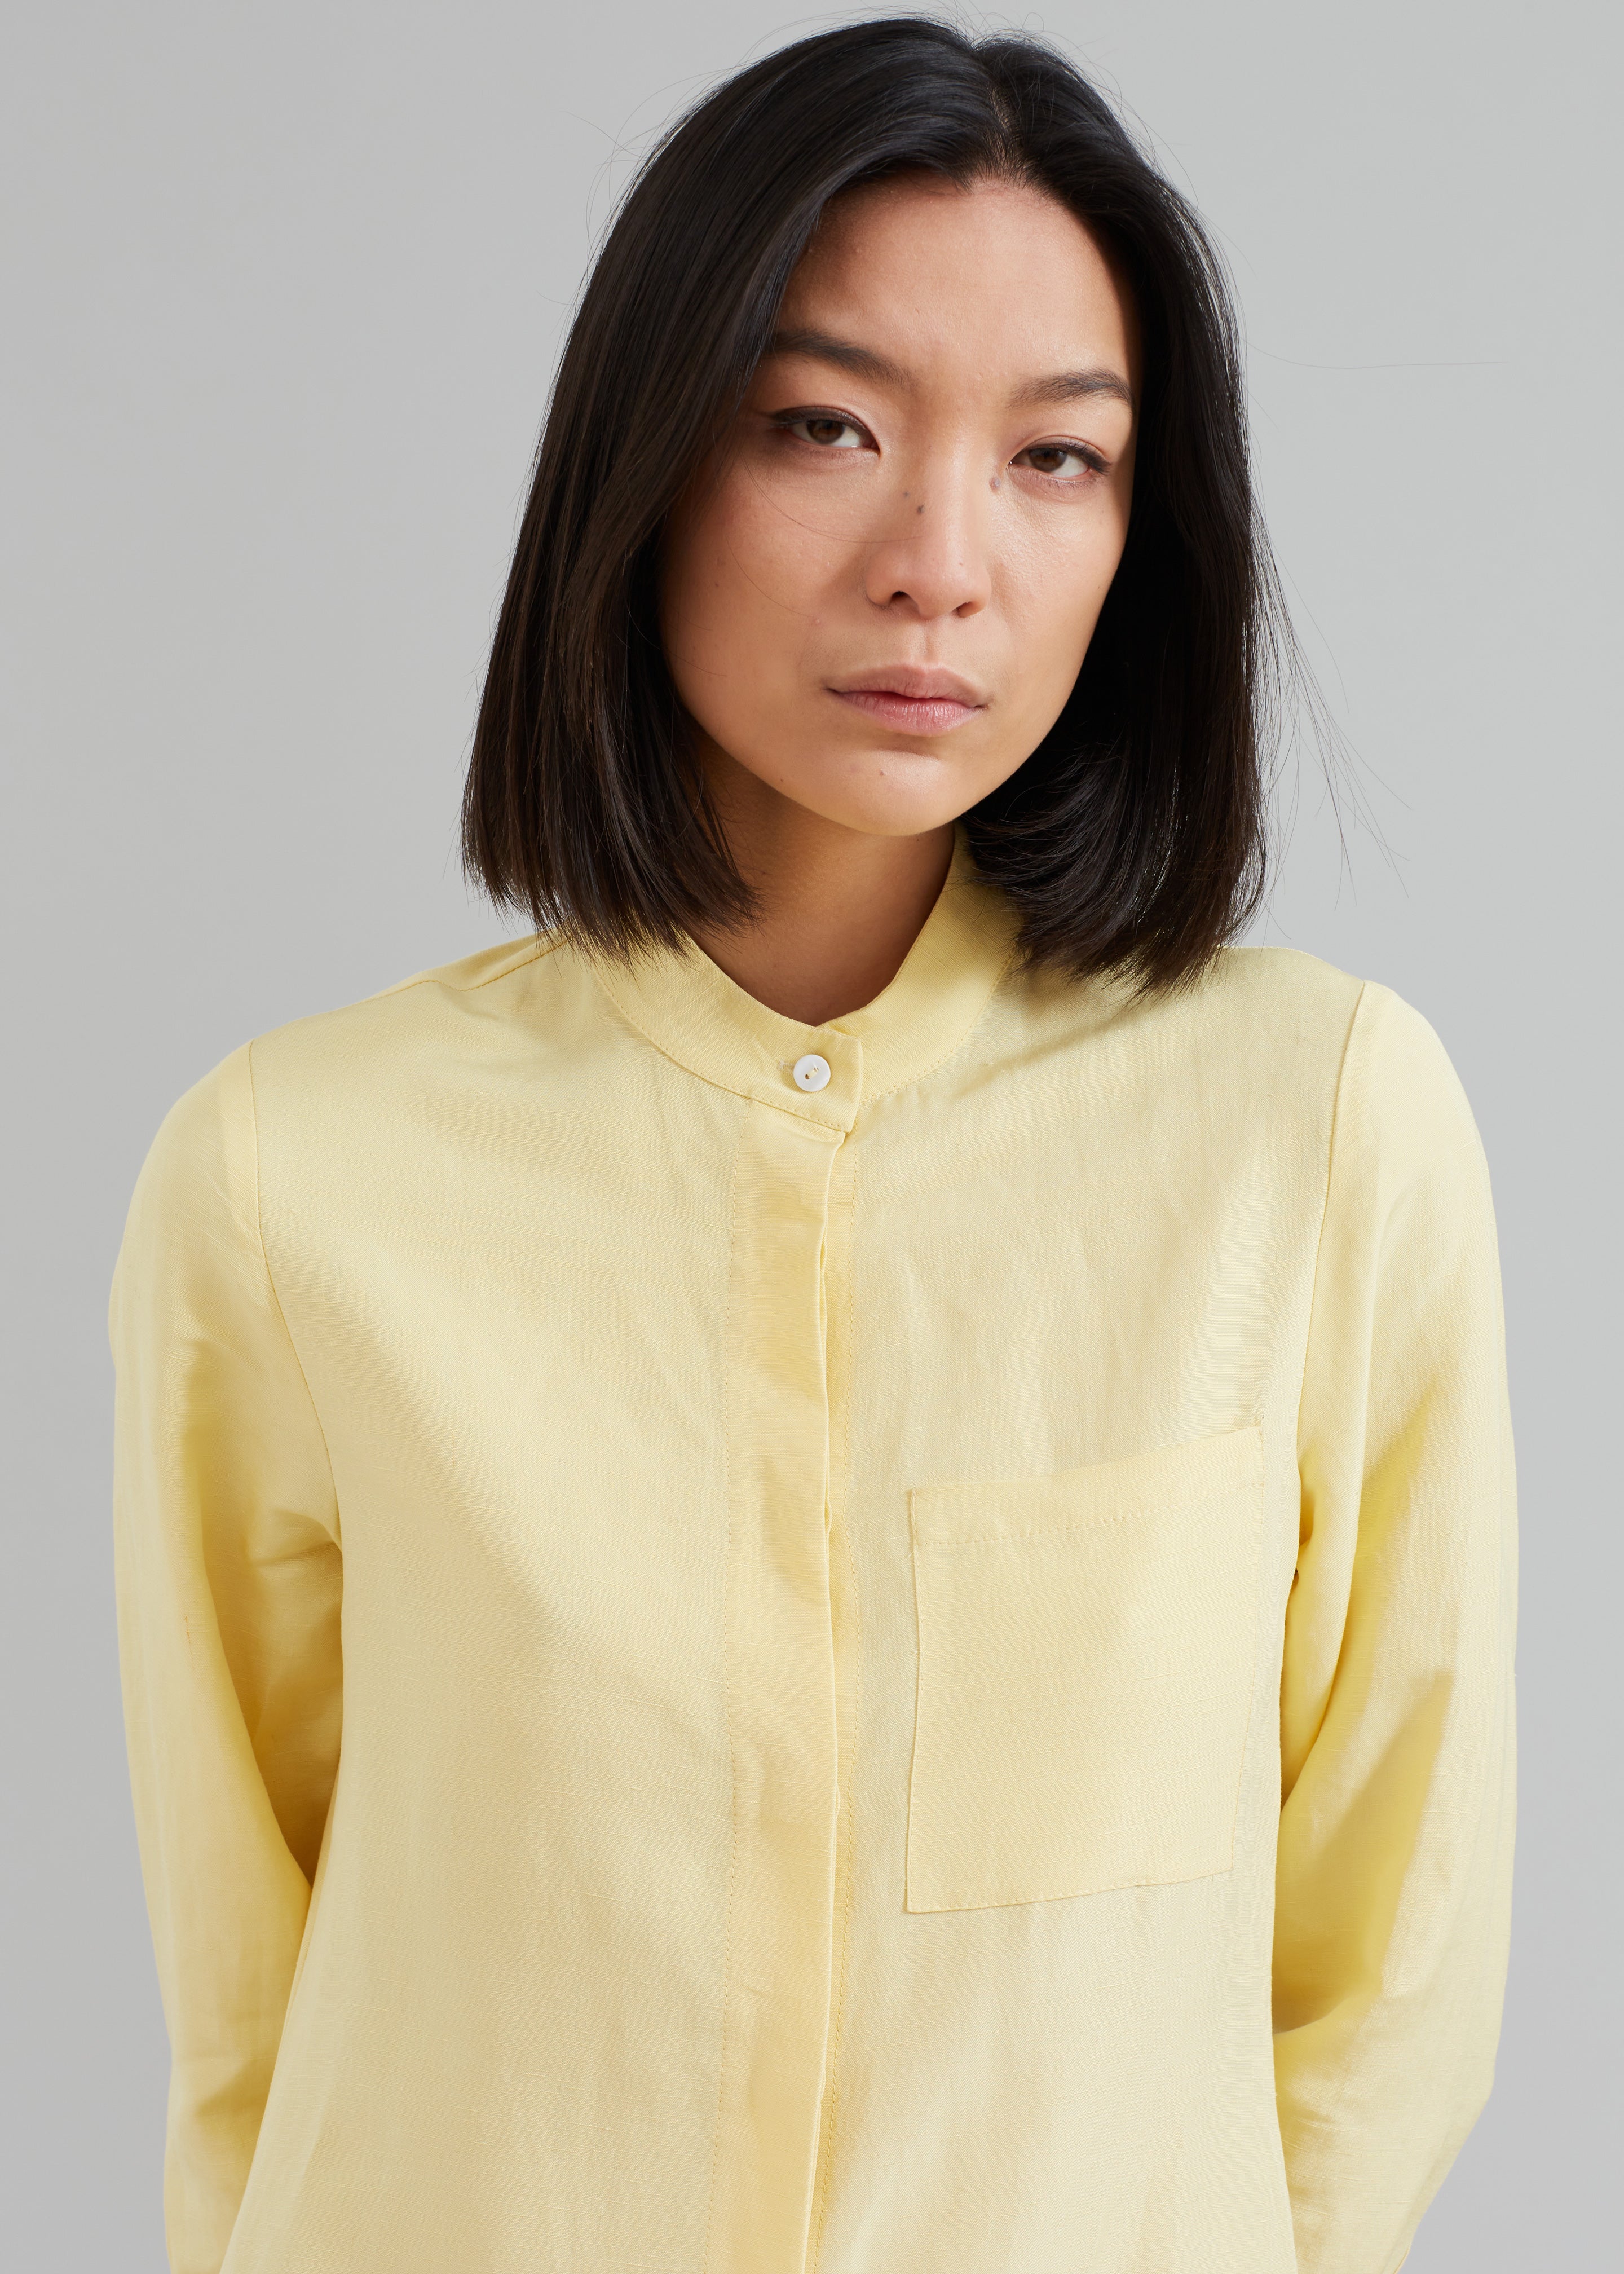 MATIN Collarless Shirt Dress - Butter – The Frankie Shop